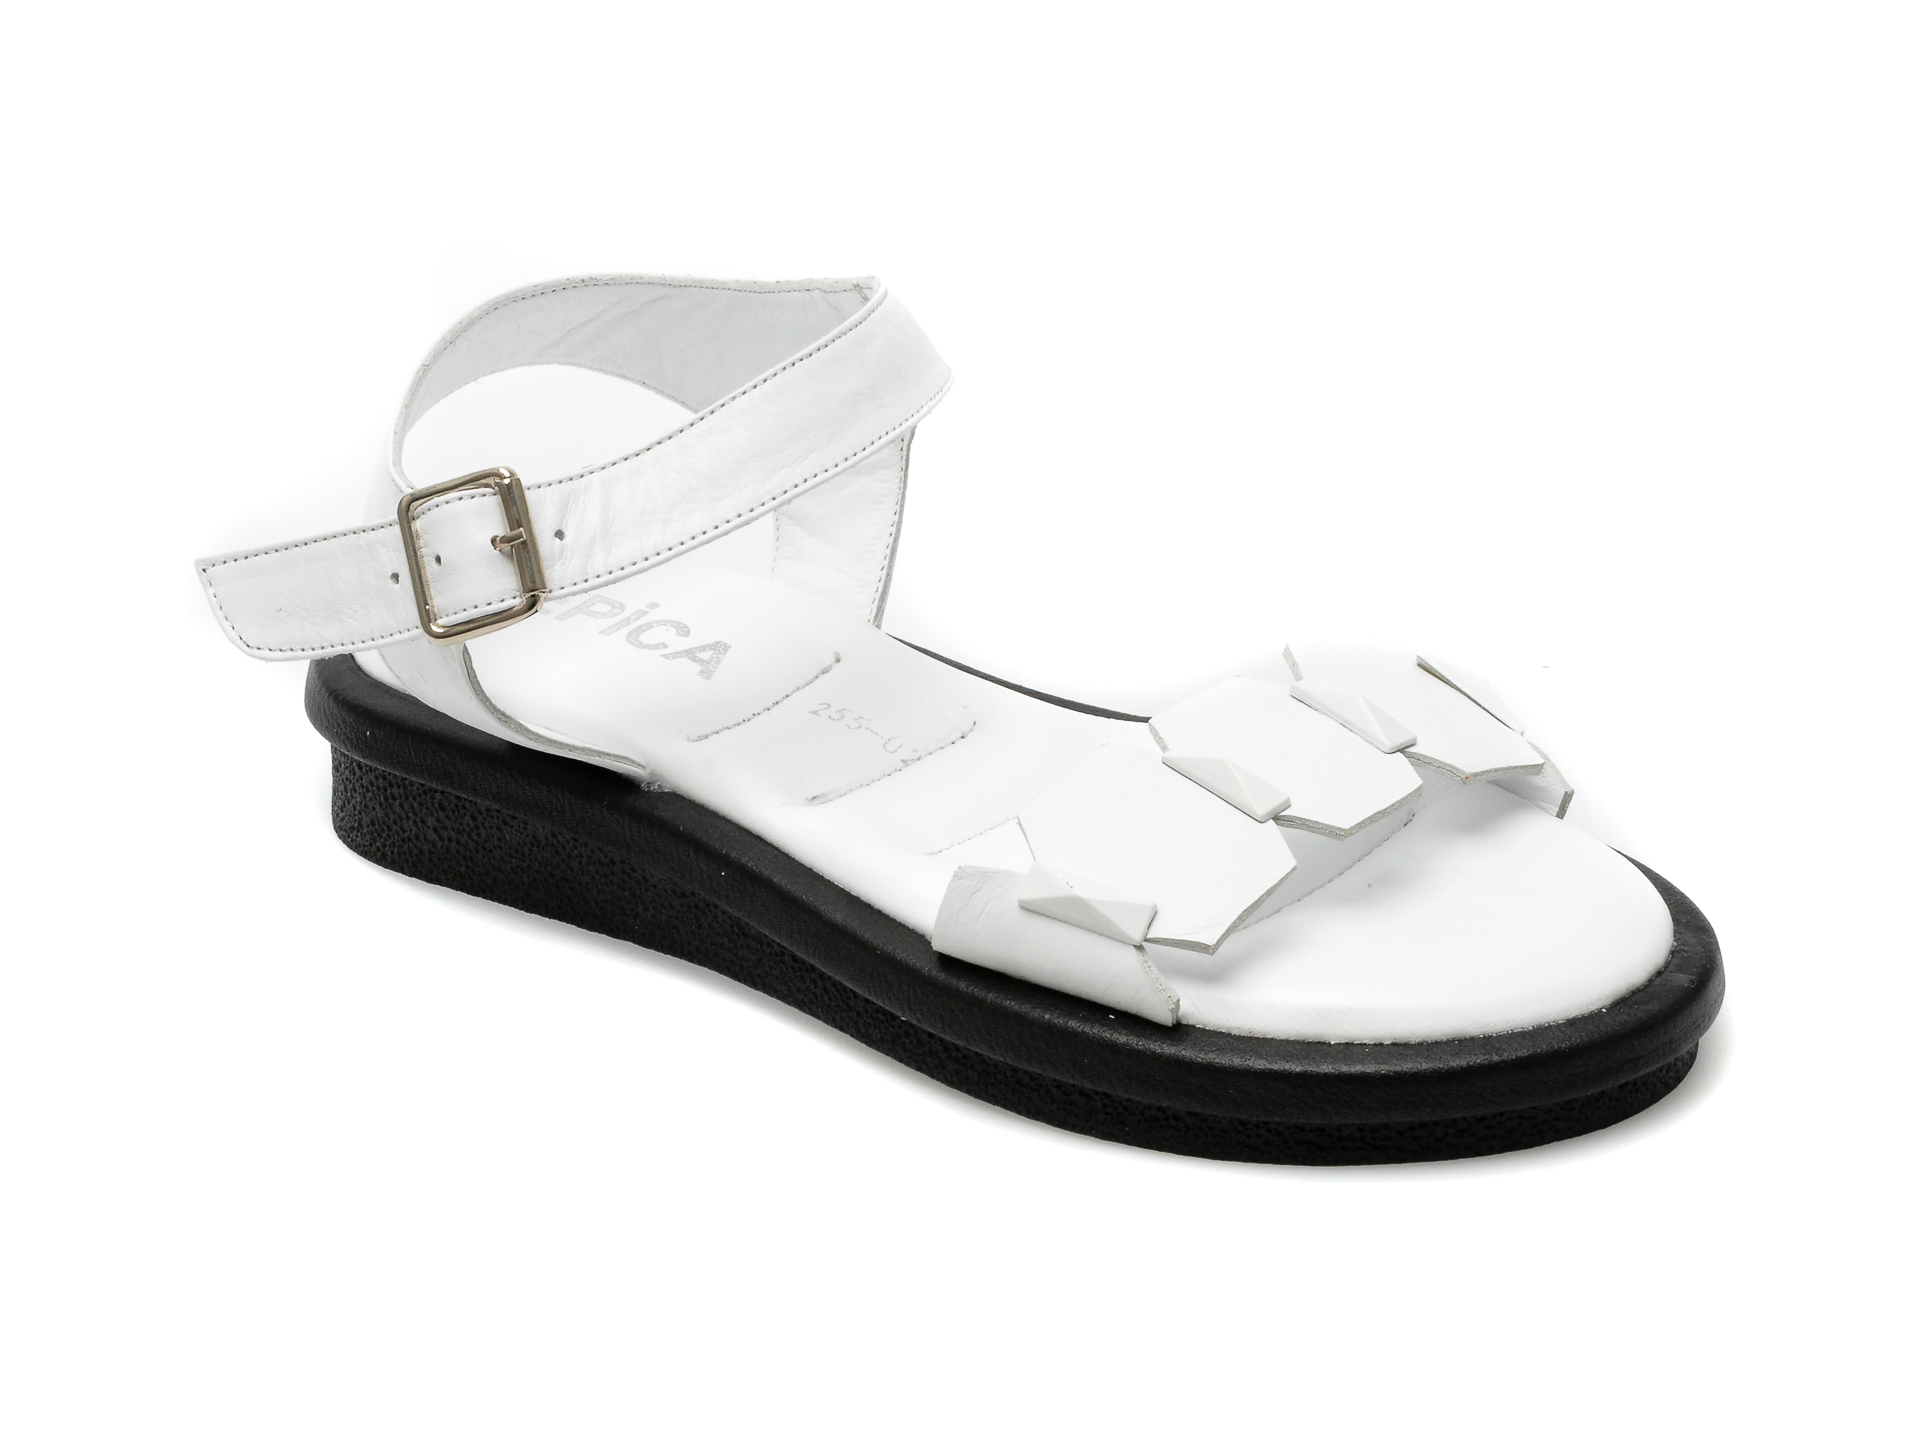 Sandale EPICA albe, 471255, din piele naturala femei 2023-03-21